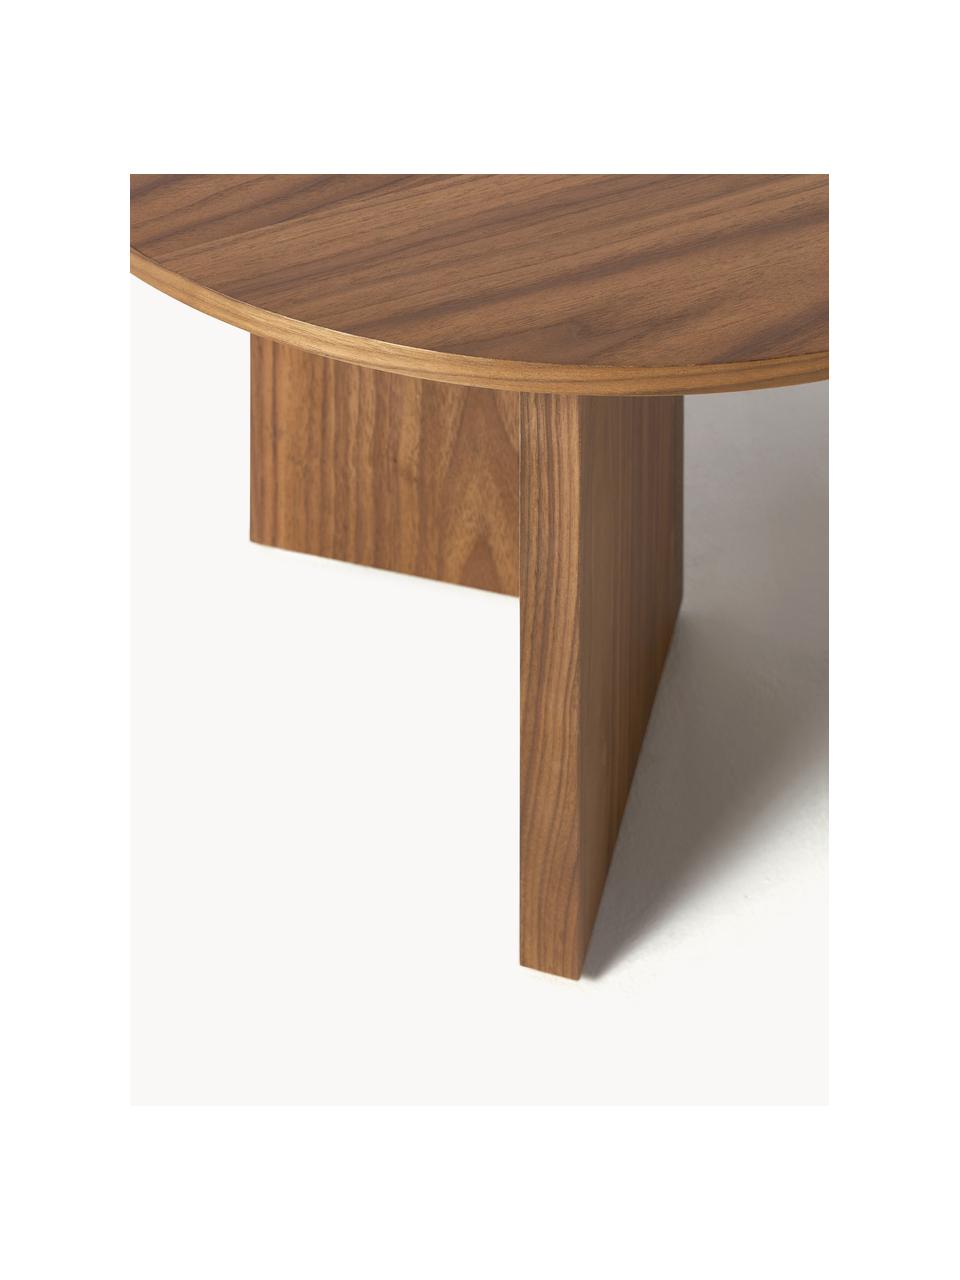 Oválny konferenčný stolík z dreva Toni, MDF-doska strednej hustoty s dyhou z orechového dreva, lakované

Tento produkt je vyrobený z trvalo udržateľného dreva s certifikátom FSC®., Orechové drevo, Š 100 x D 55 cm